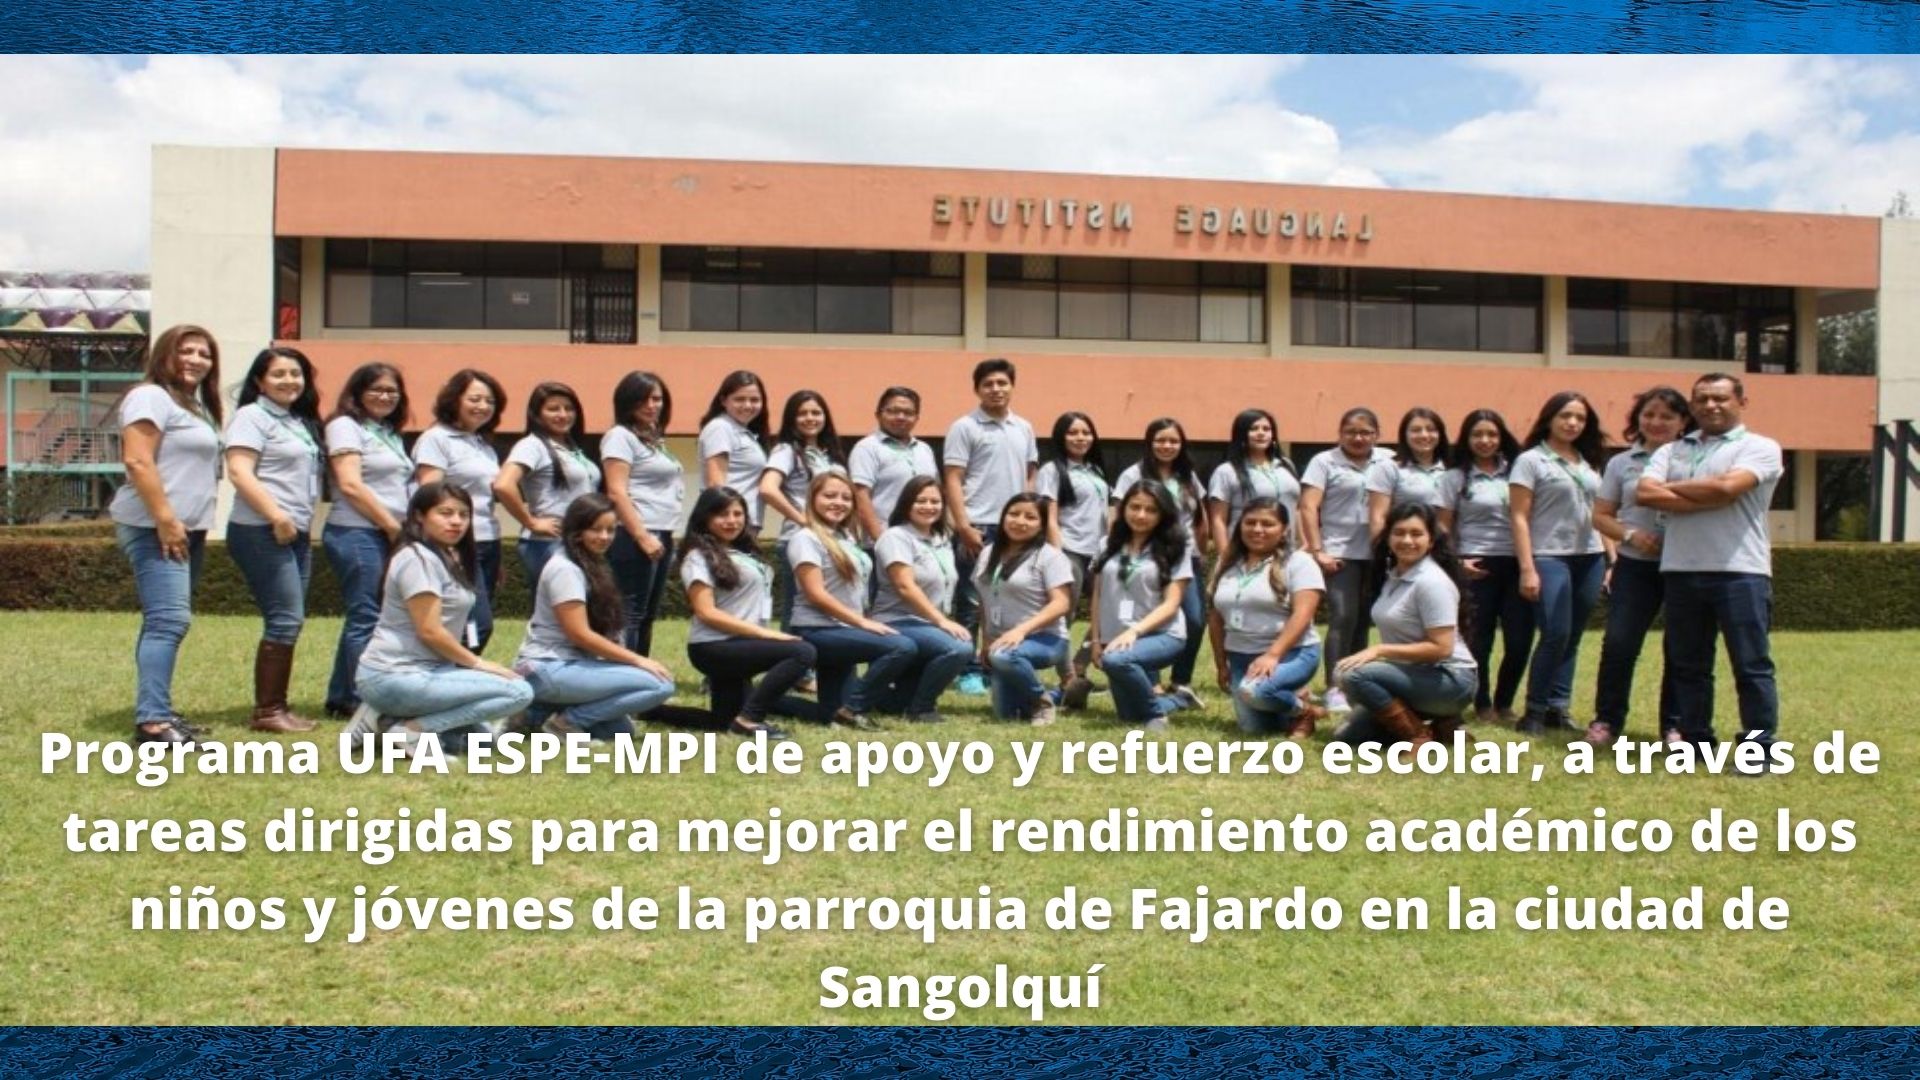 Programa UFA ESPE-MPI de apoyo y refuerzo escolar, a través de tareas dirigidas para mejorar el rendimiento académico de los niños y jóvenes de la parroquia de Fajardo en la ciudad de Sangolquí